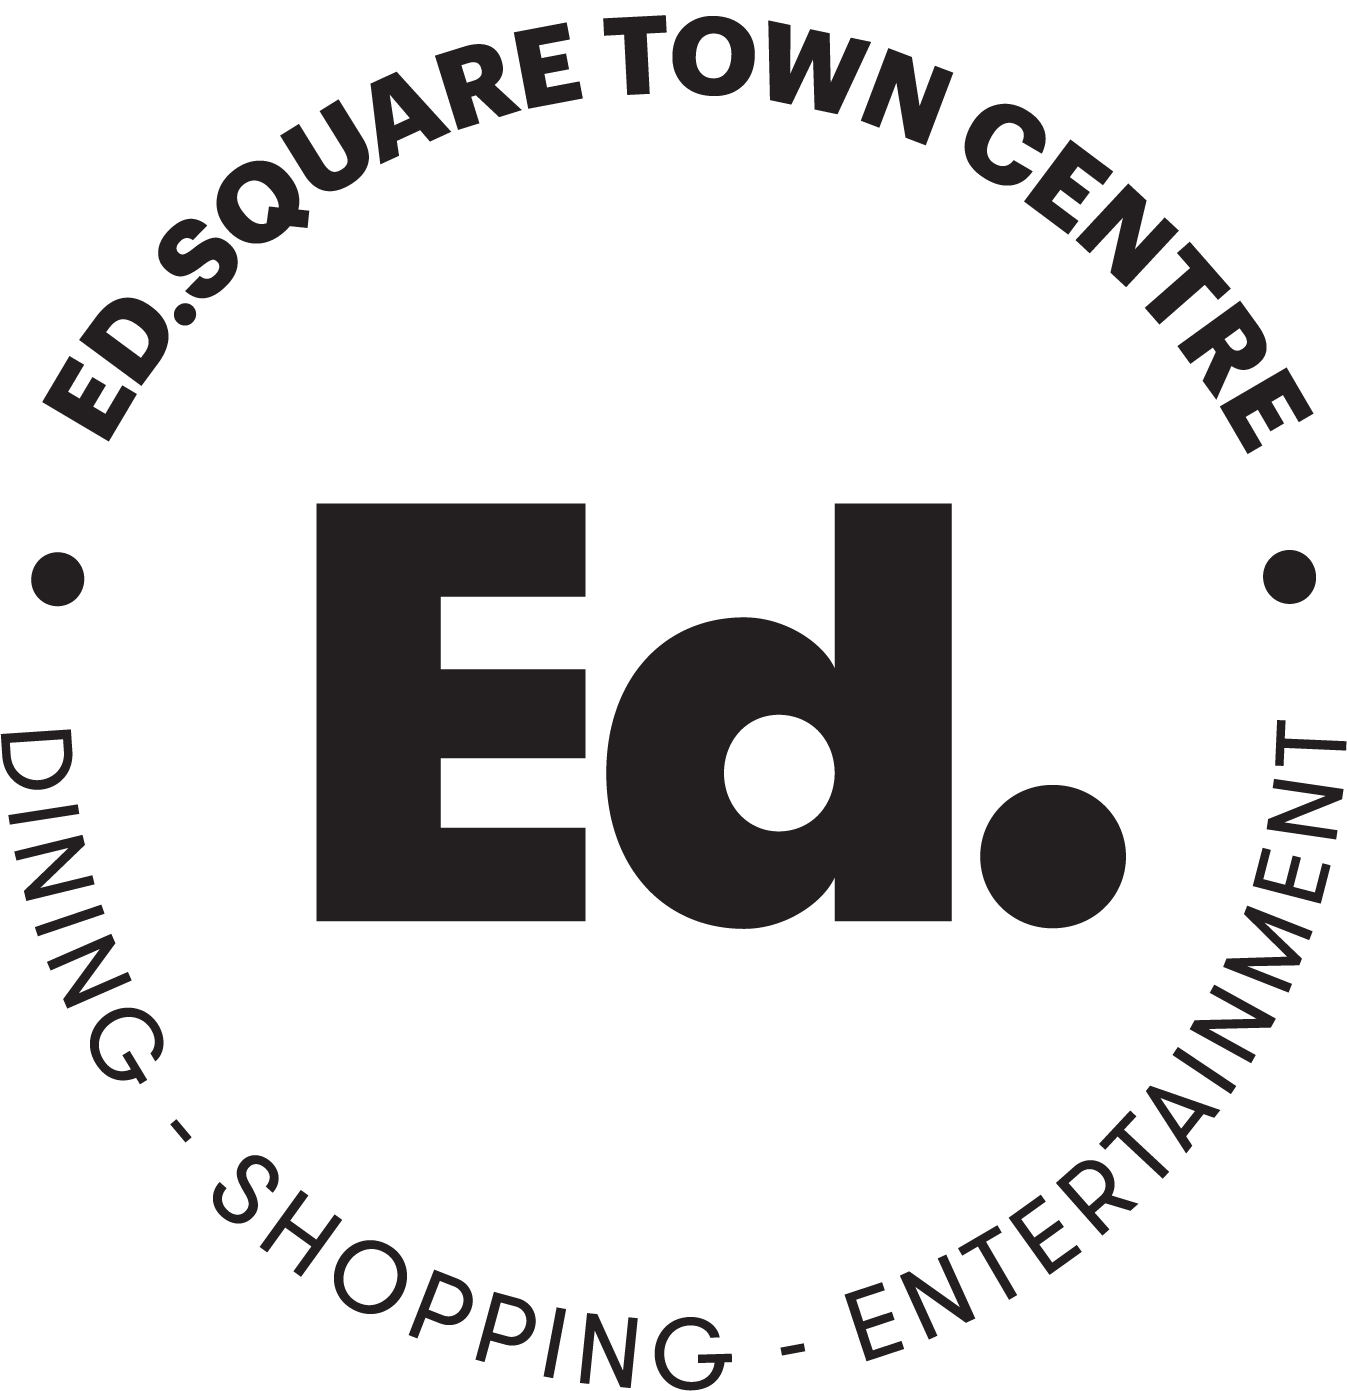 Ed Square